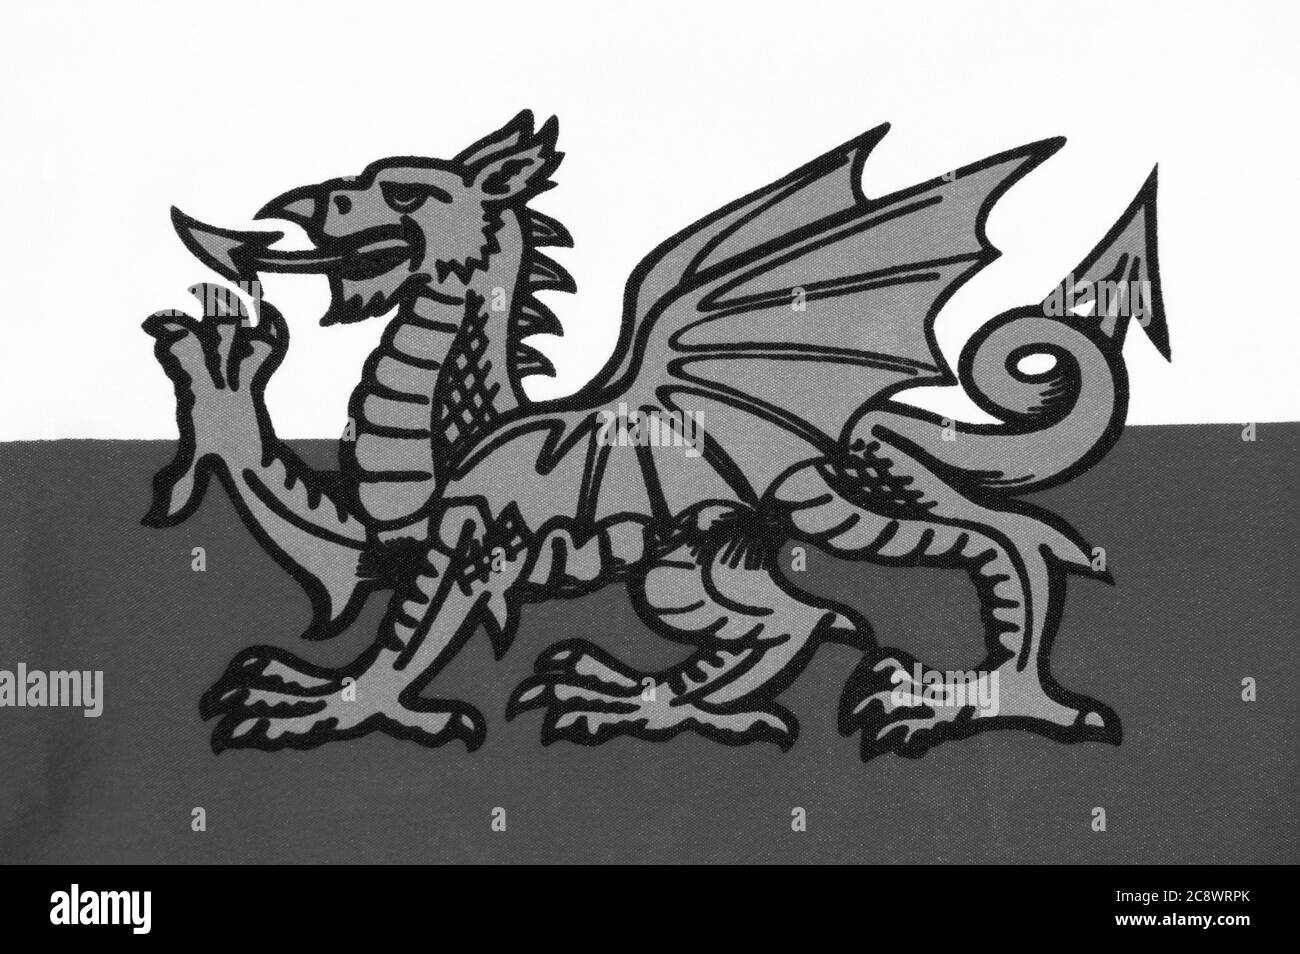 Die Nationalflagge von Wales UK bekannt als Y Ddraig Goch (der Rote Baron) zeigt den walisischen Drachen schwarz-weiß monochromes Bild Stock Foto Stockfoto